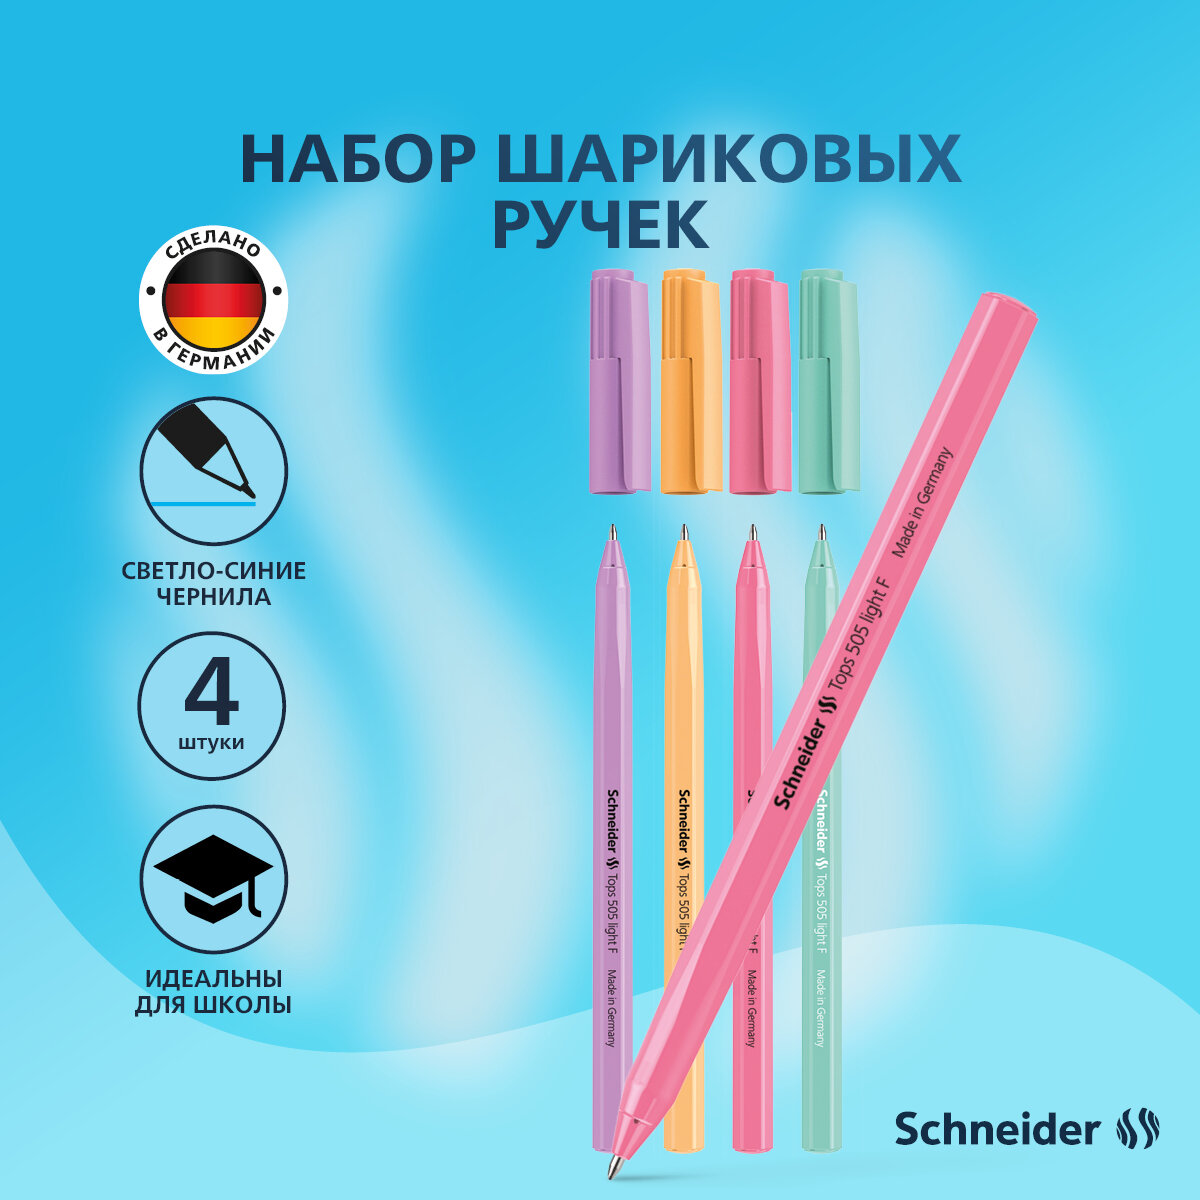 Ручки шариковые синие набор для школы 4 штук/ комплект ручек Schneider Tops 505 F Pastel, пастельные цвета корпуса, линия письма 0,8 мм канцелярия для офиса/сделано в Германии